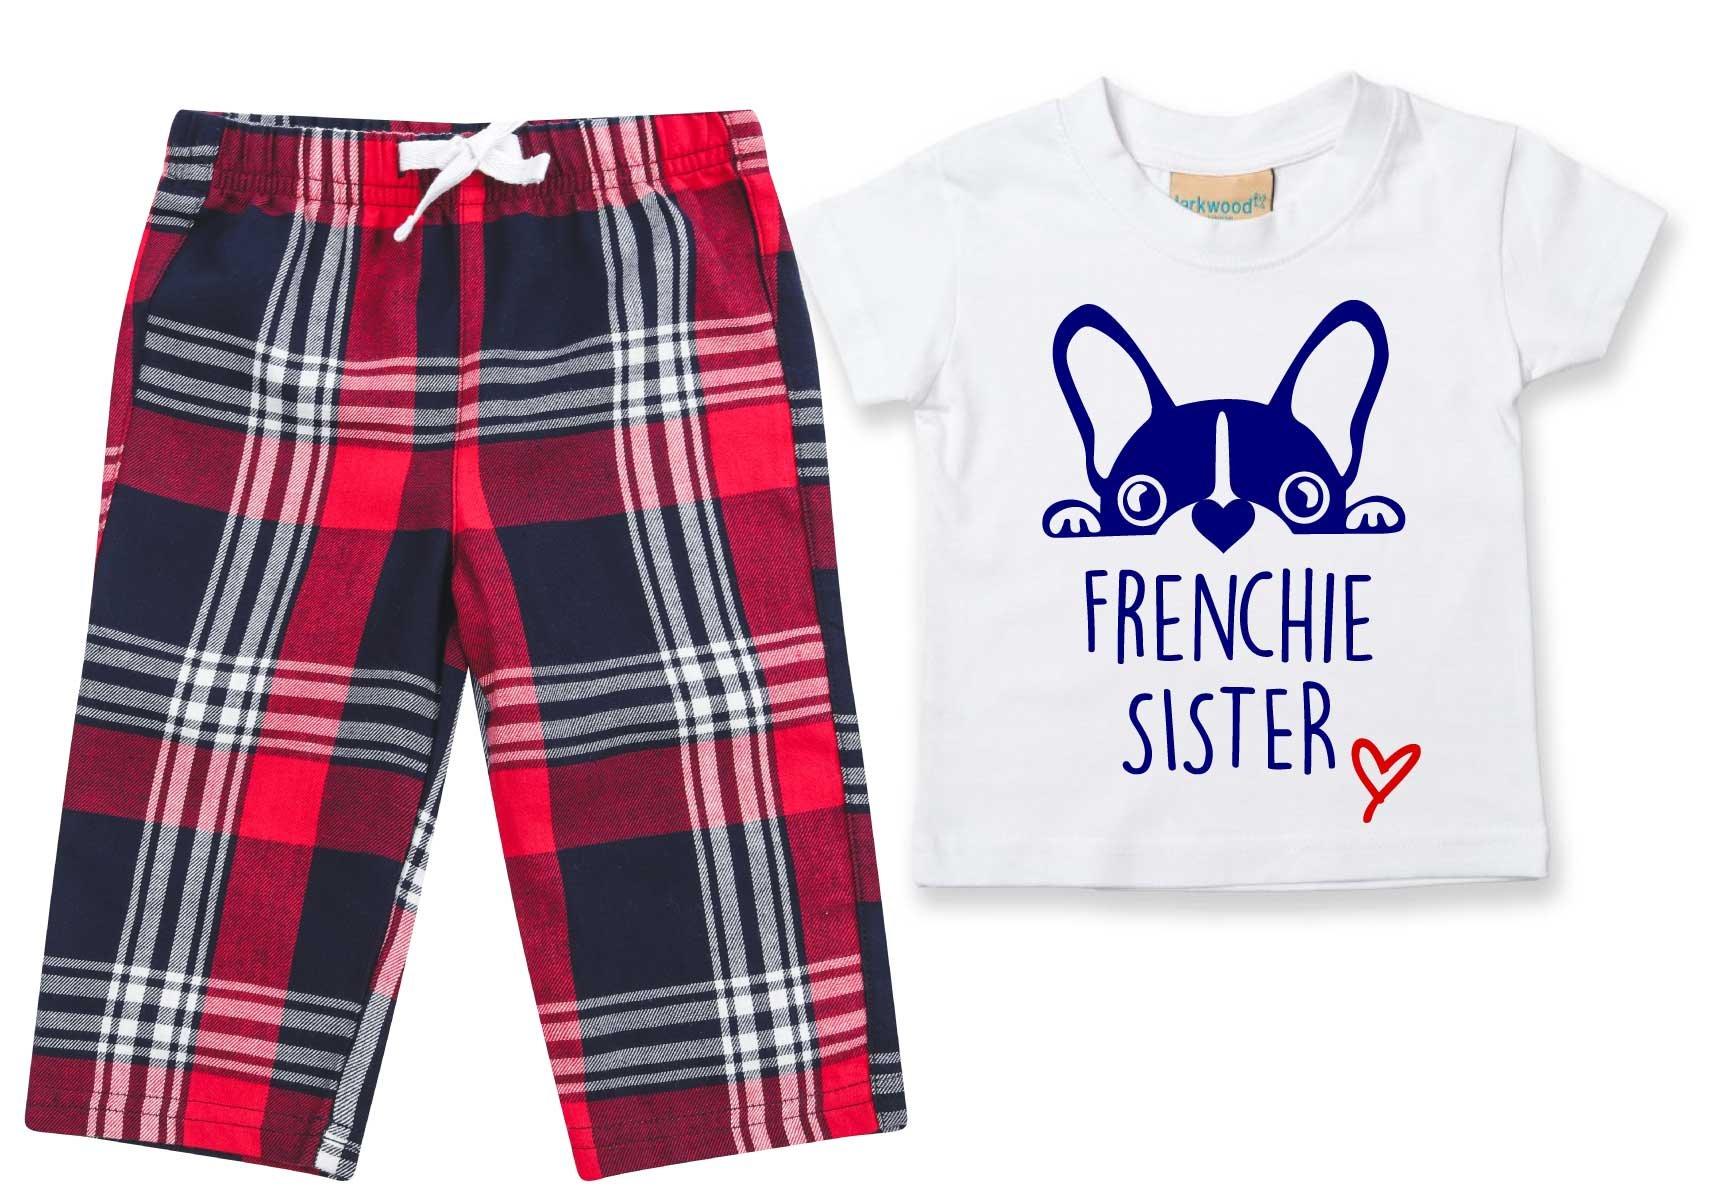 Пижамы Frenchie Sister, детские брюки в клетку, пижамный комплект с французским бульдогом 60 SECOND MAKEOVER, красный георгина тартан бордюрная